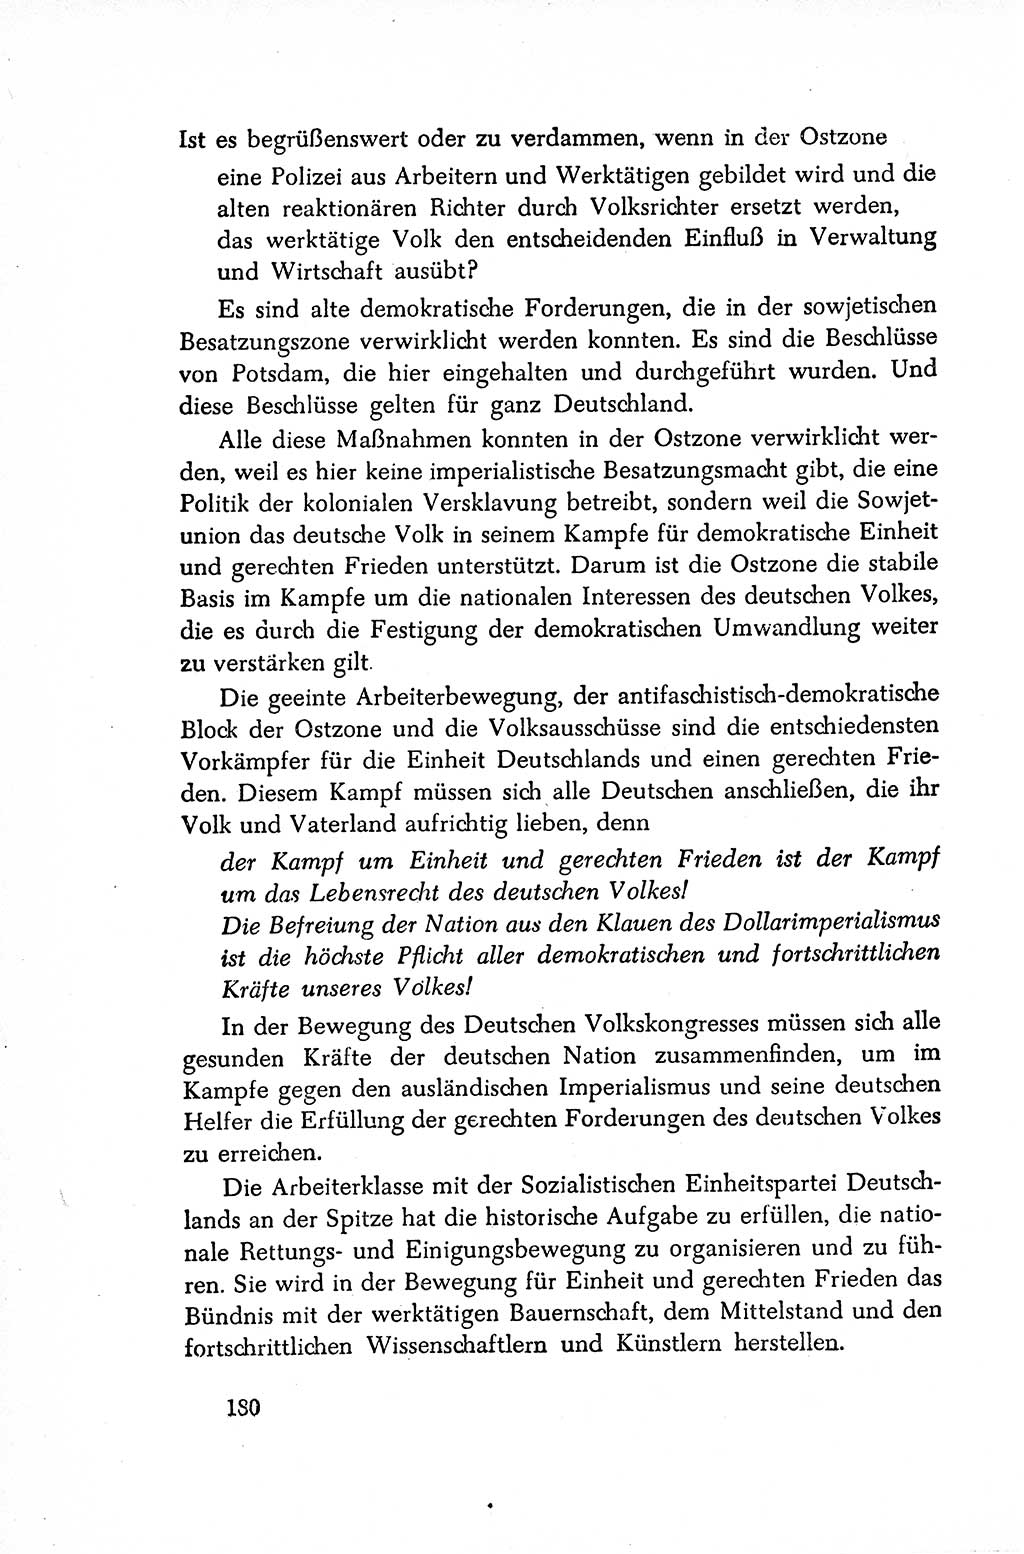 Dokumente der Sozialistischen Einheitspartei Deutschlands (SED) [Sowjetische Besatzungszone (SBZ) Deutschlands/Deutsche Demokratische Republik (DDR)] 1948-1950, Seite 180 (Dok. SED SBZ Dtl. DDR 1948-1950, S. 180)